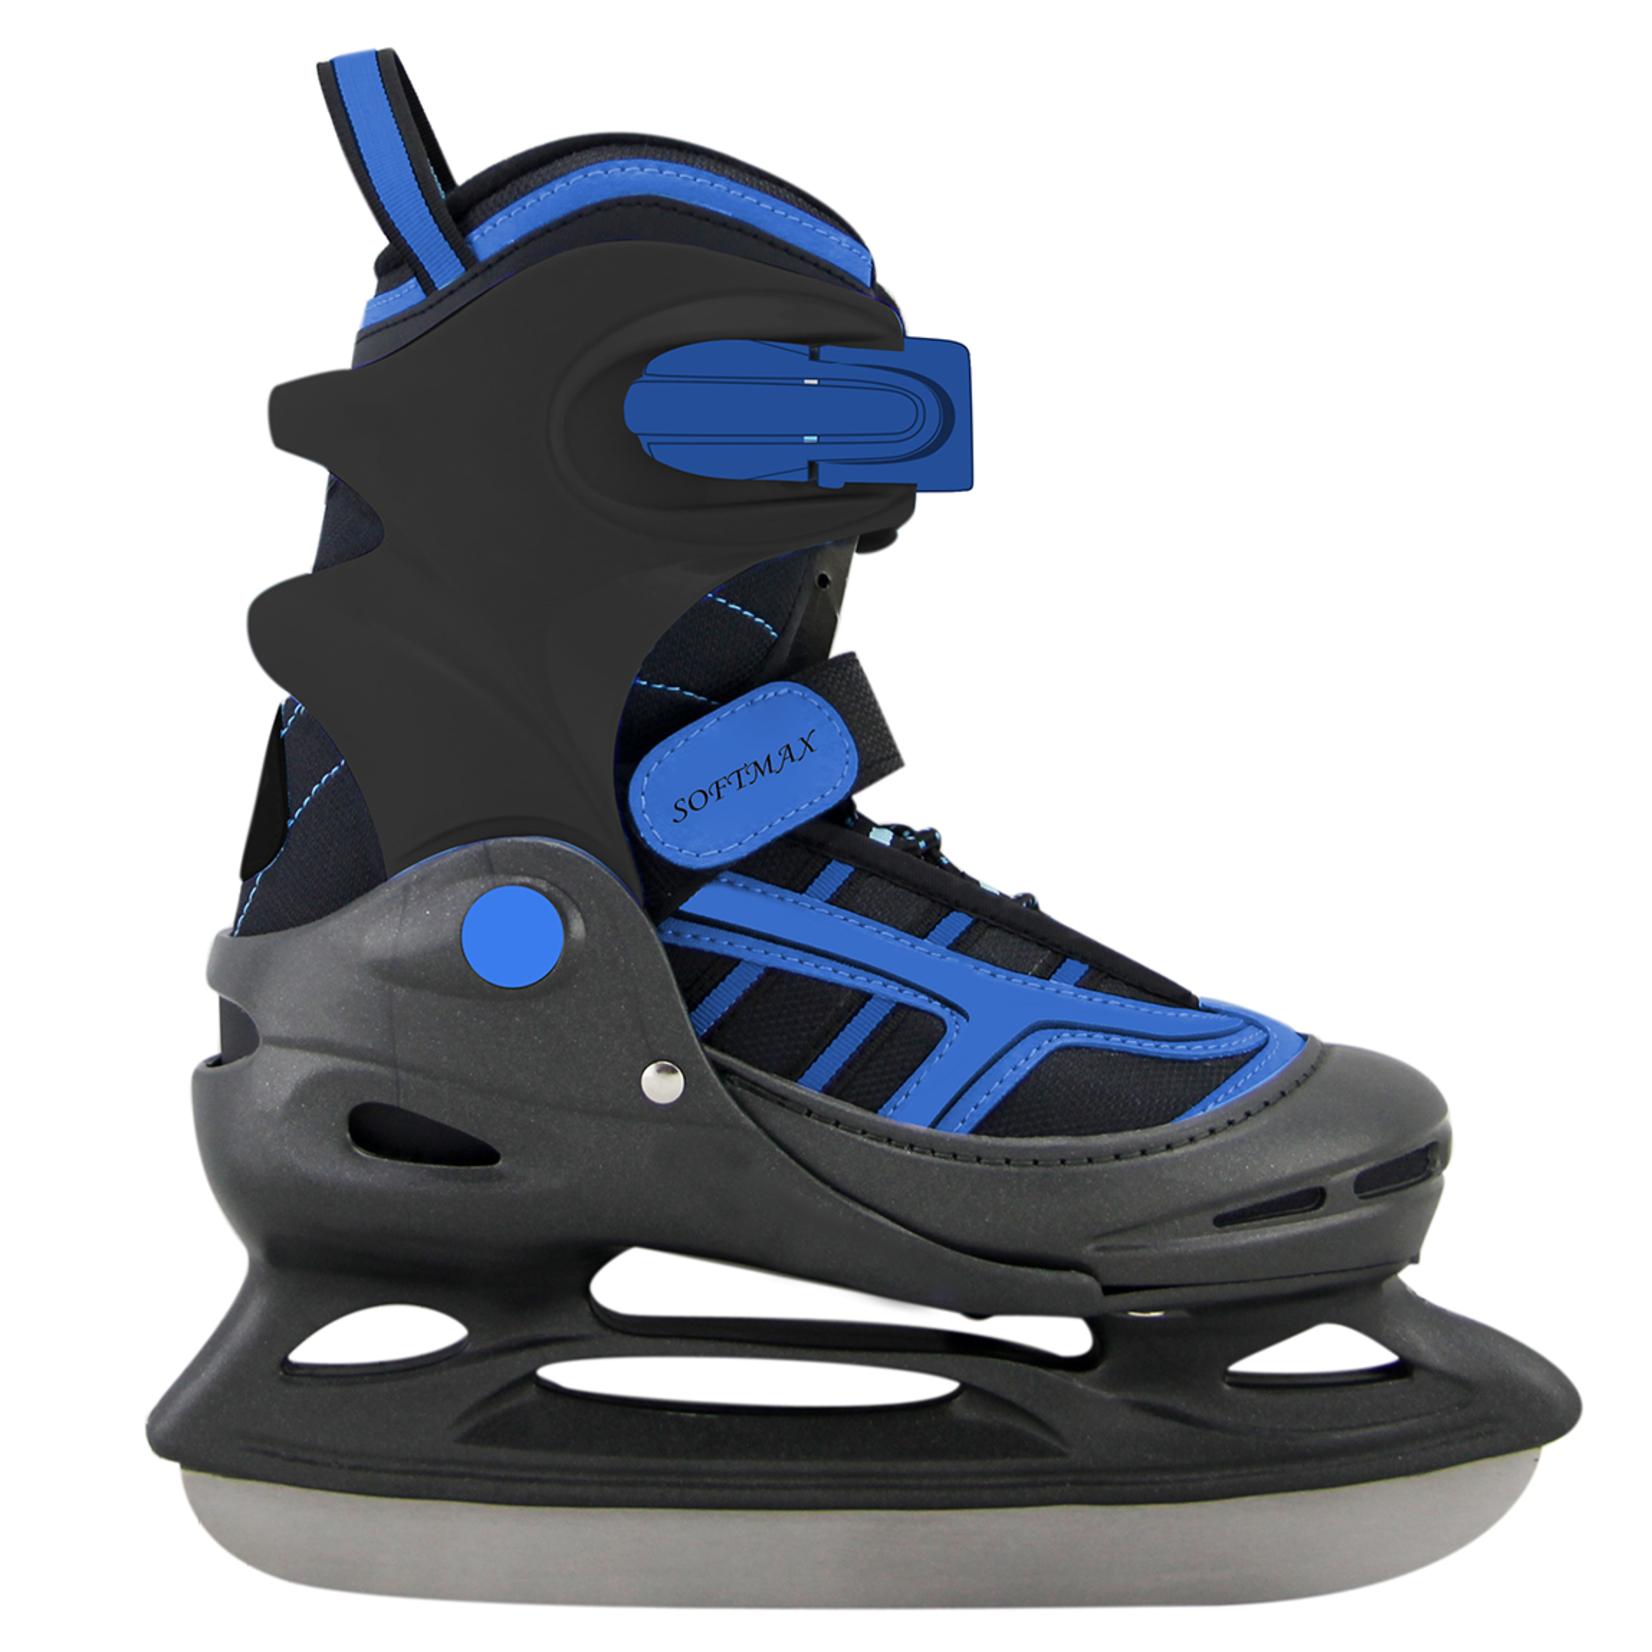 Berio Hiver Softmax PW211 - Ice Skates Adjustable XXS 6-9 Boy